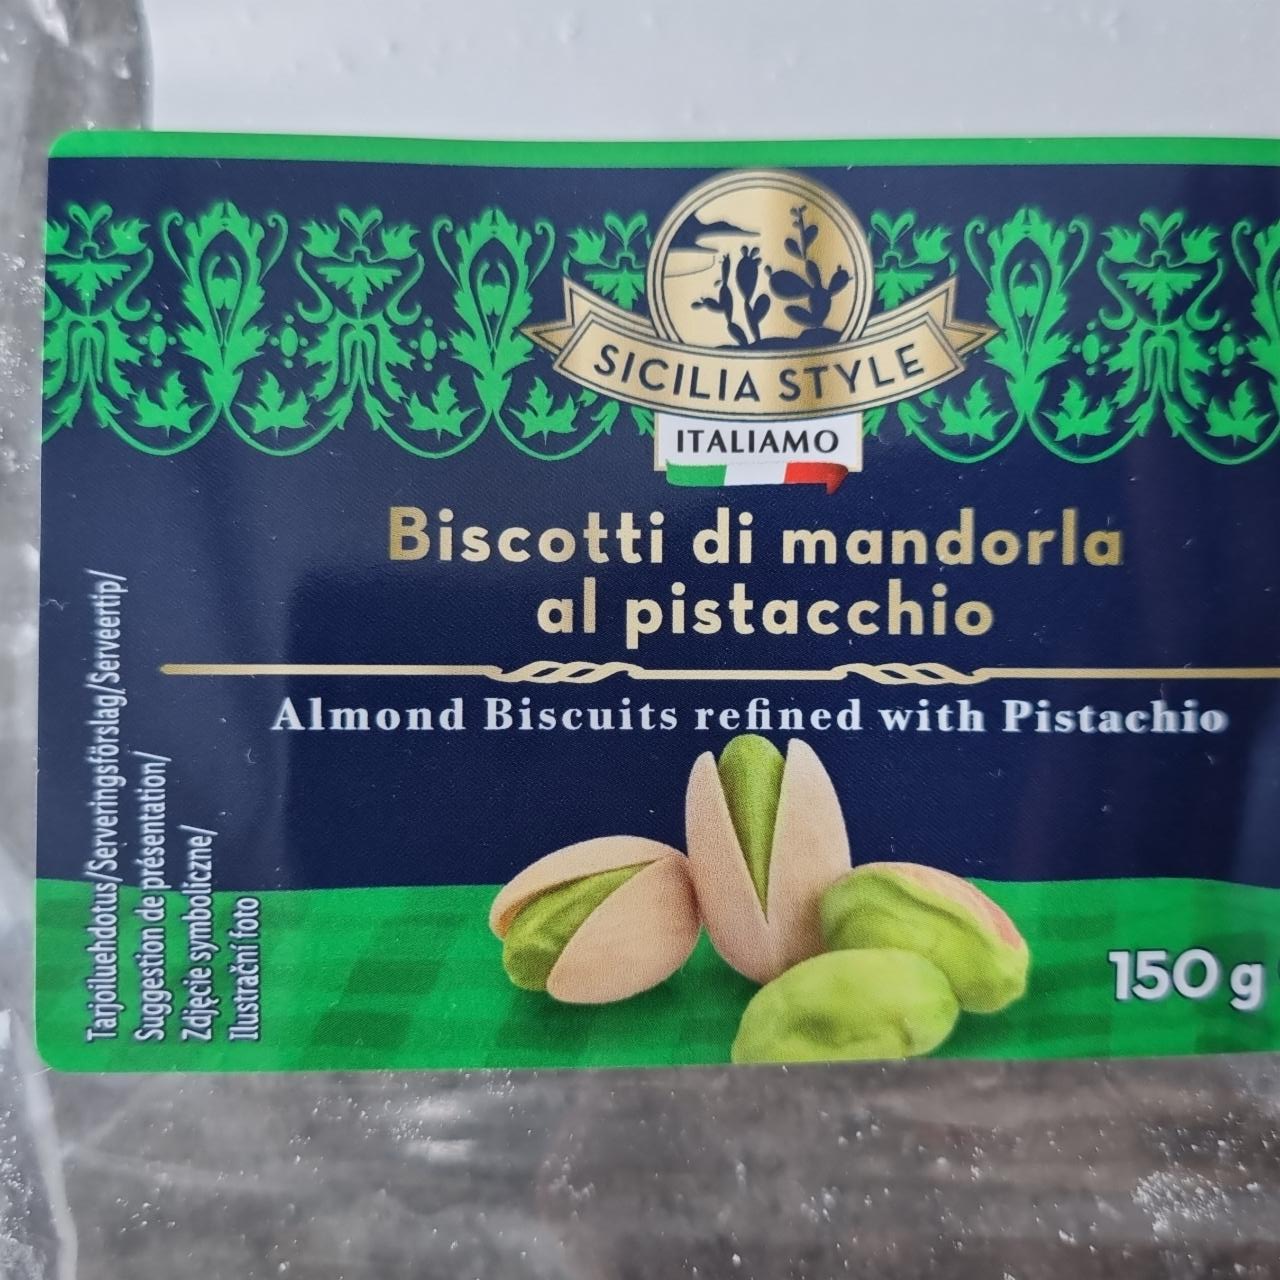 Fotografie - Biscotti di mandorla al pistacchio Italiamo